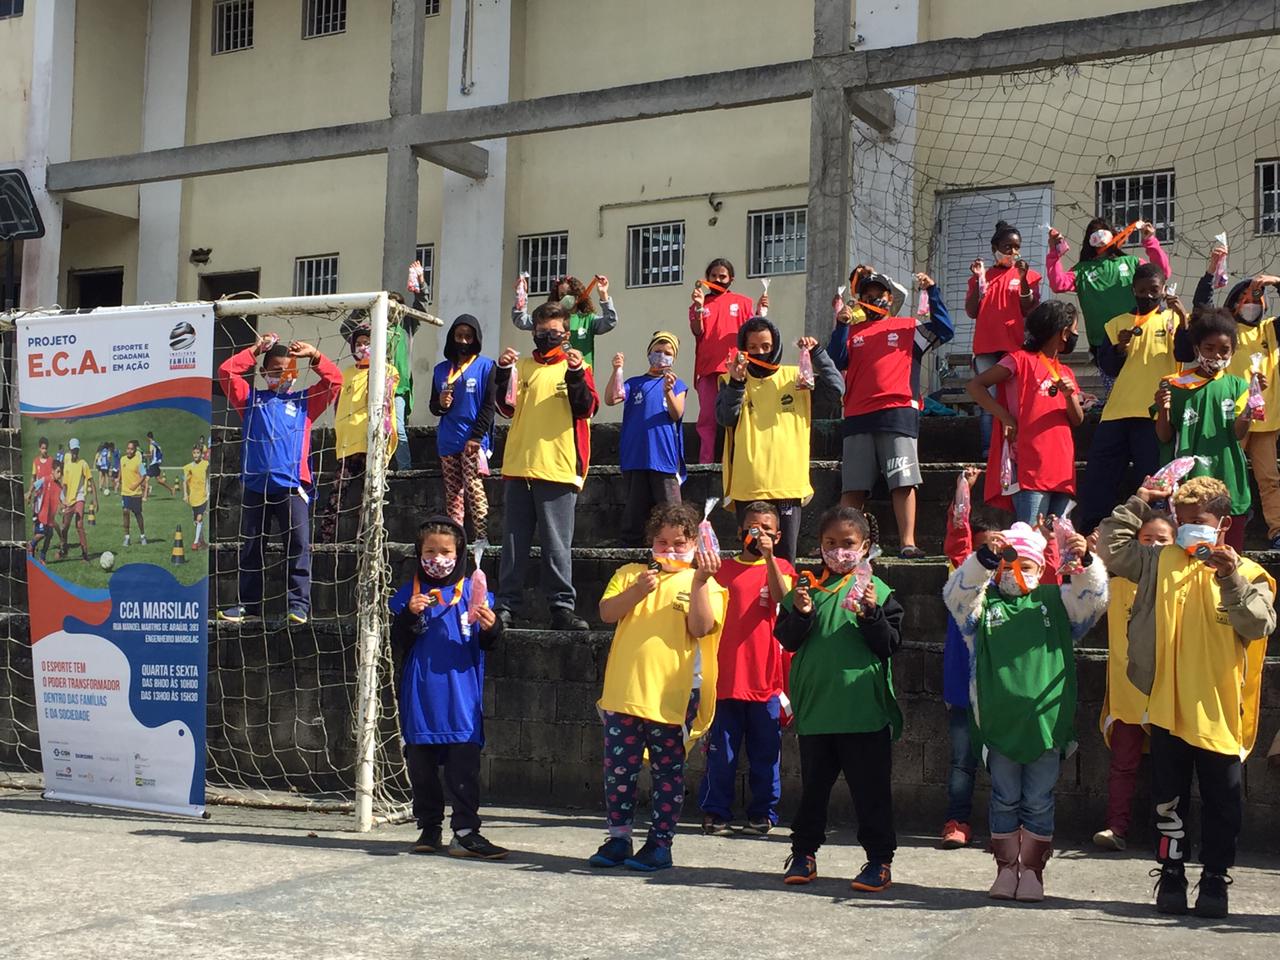 Crianças participantes da atividade, usando coletes que separam as equipes, posam para foto na quadra após receberem as medalhas de participação.